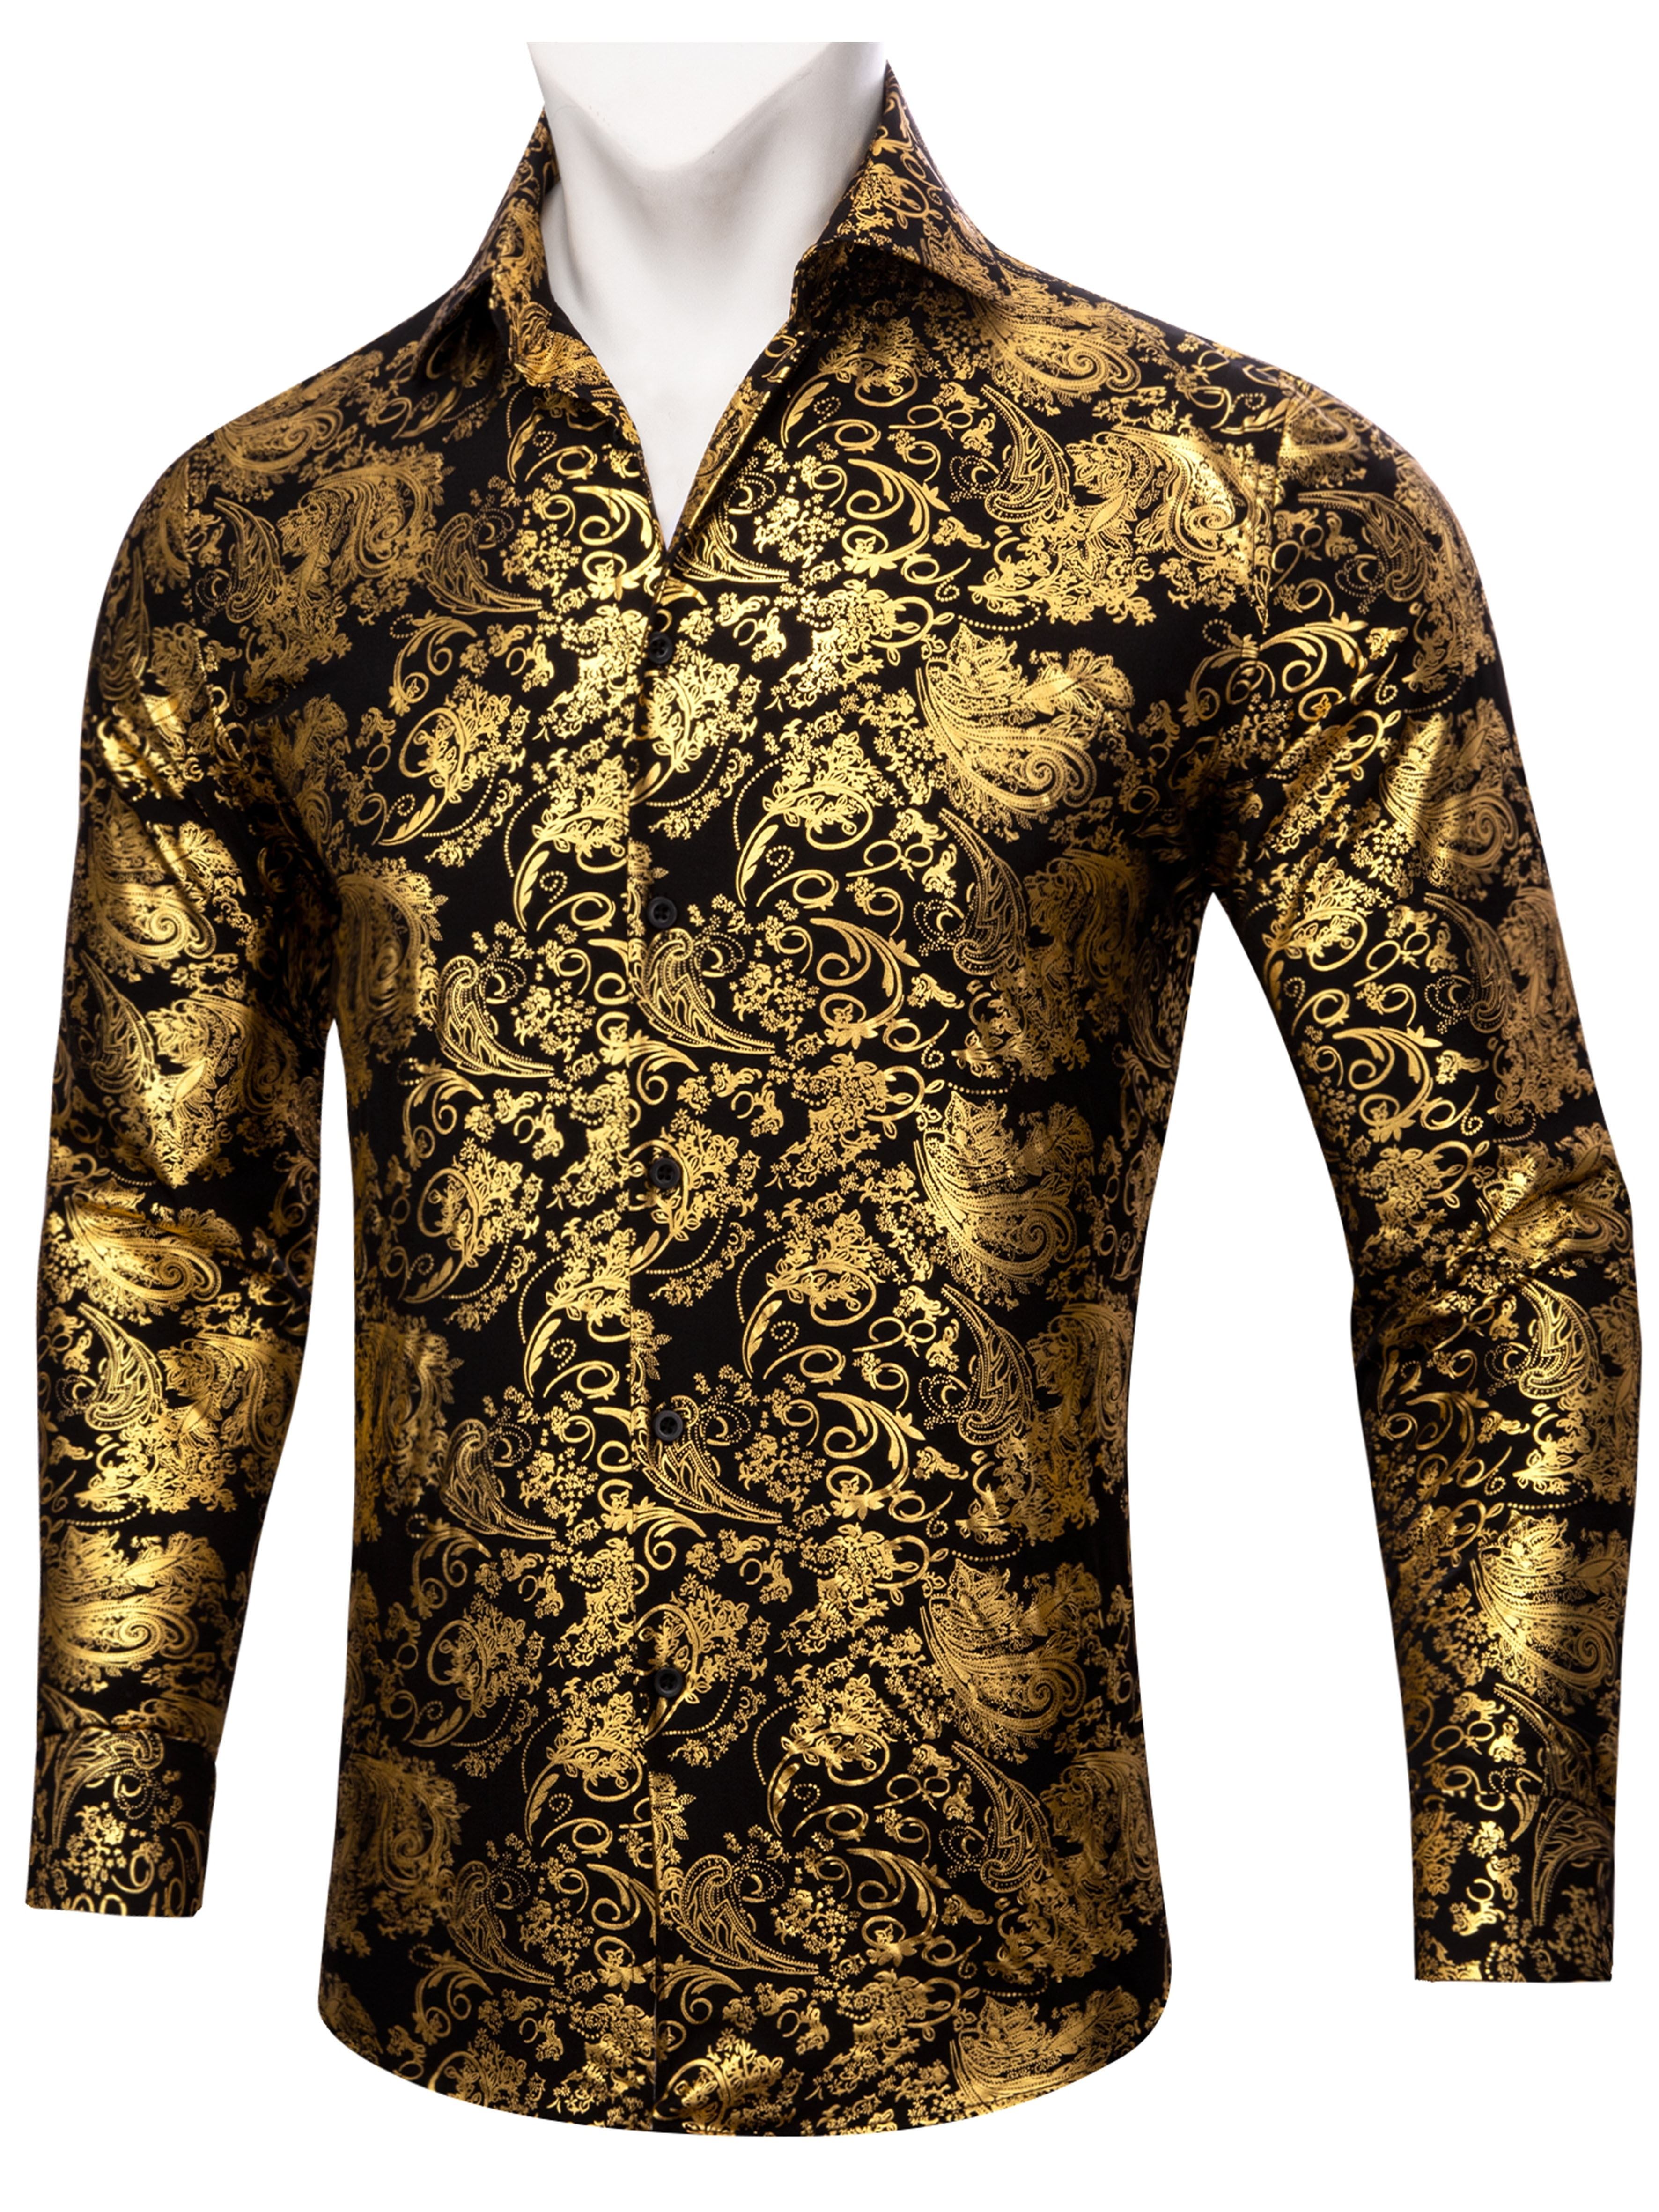 Jacquard Long Sleeve Men Business Shirt. Plus Size Clothes Online Shop  Singapore - Large Size Clothing Shop